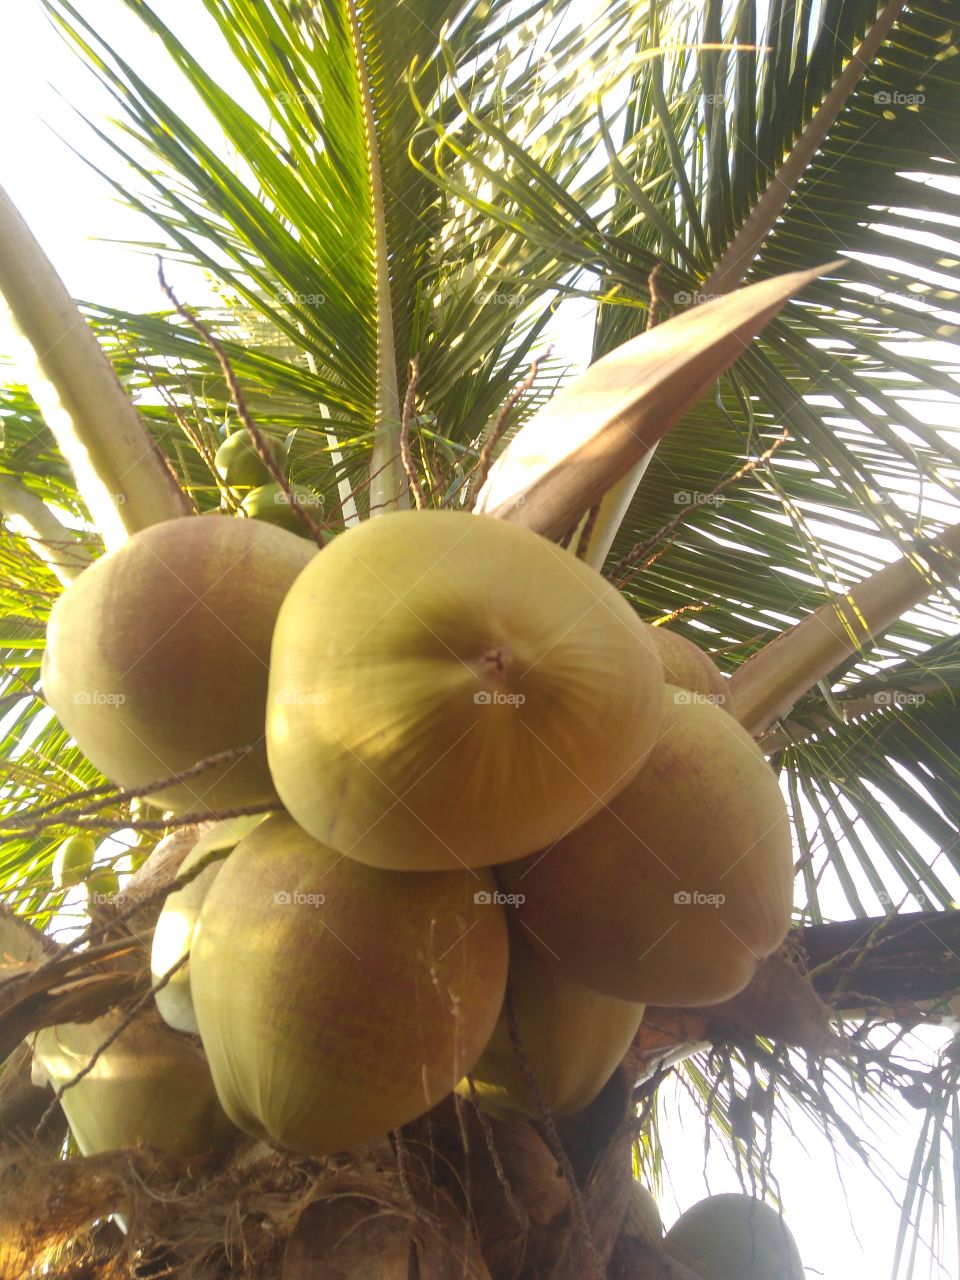 Coconut tree, green coconuts, coconut water.../ Coqueiro, côcos verdes, água de coco...